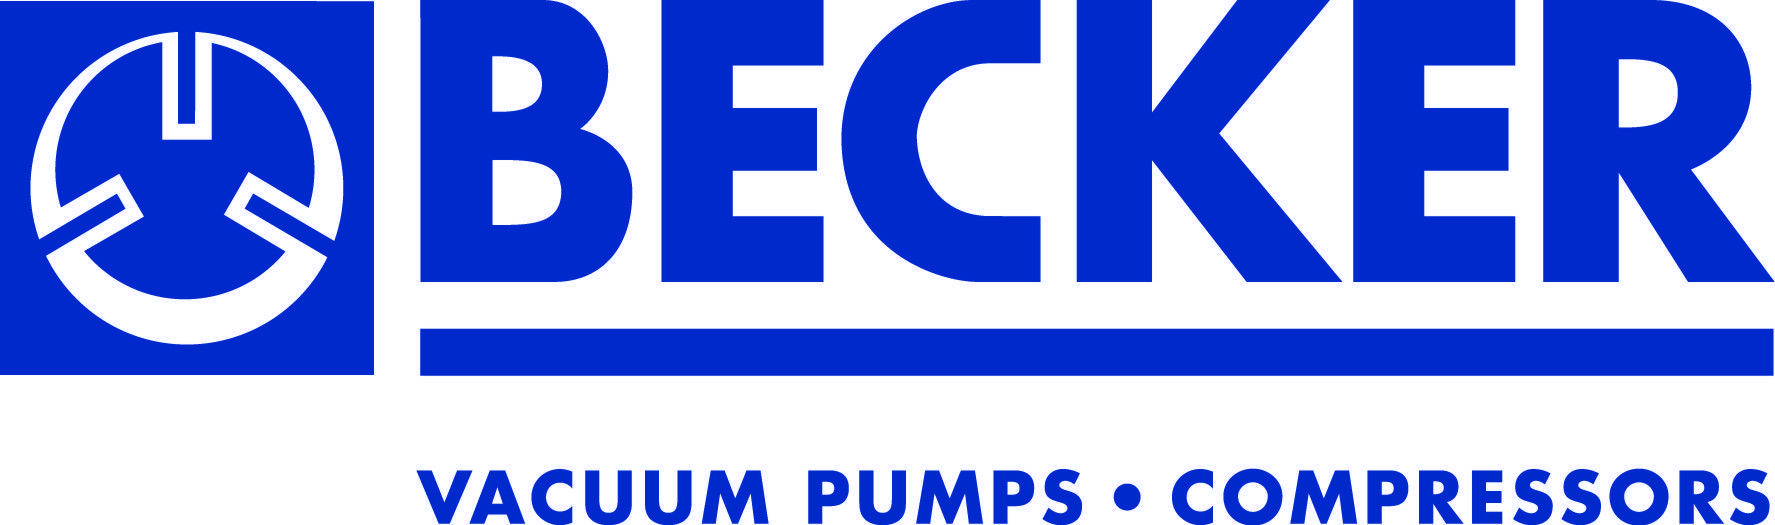 Becker Logo - Becker Pumps Corporation - WEF Buyers Guide